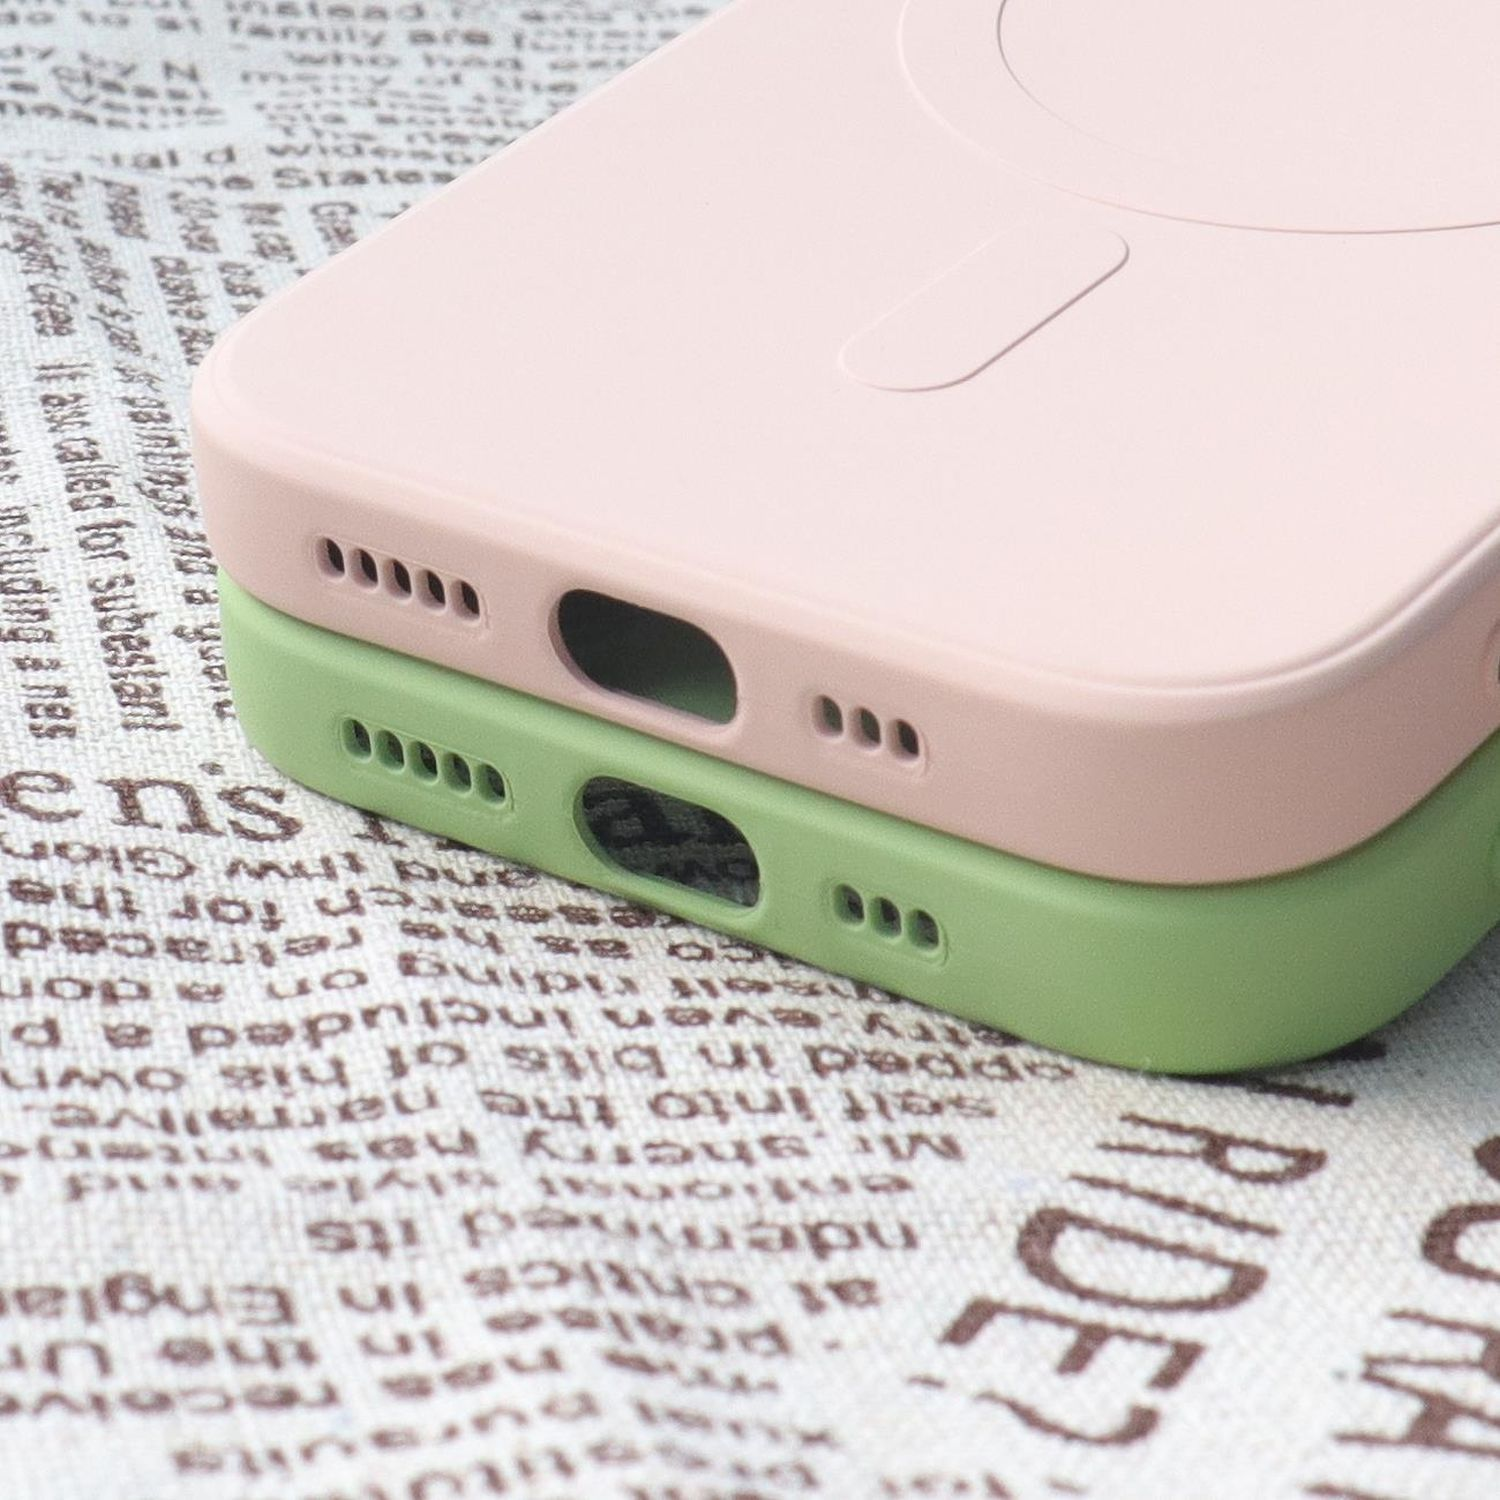 Rosa Cover Apple, Backcover, Plus, COFI 15 Silikonhülle MagSafe, iPhone